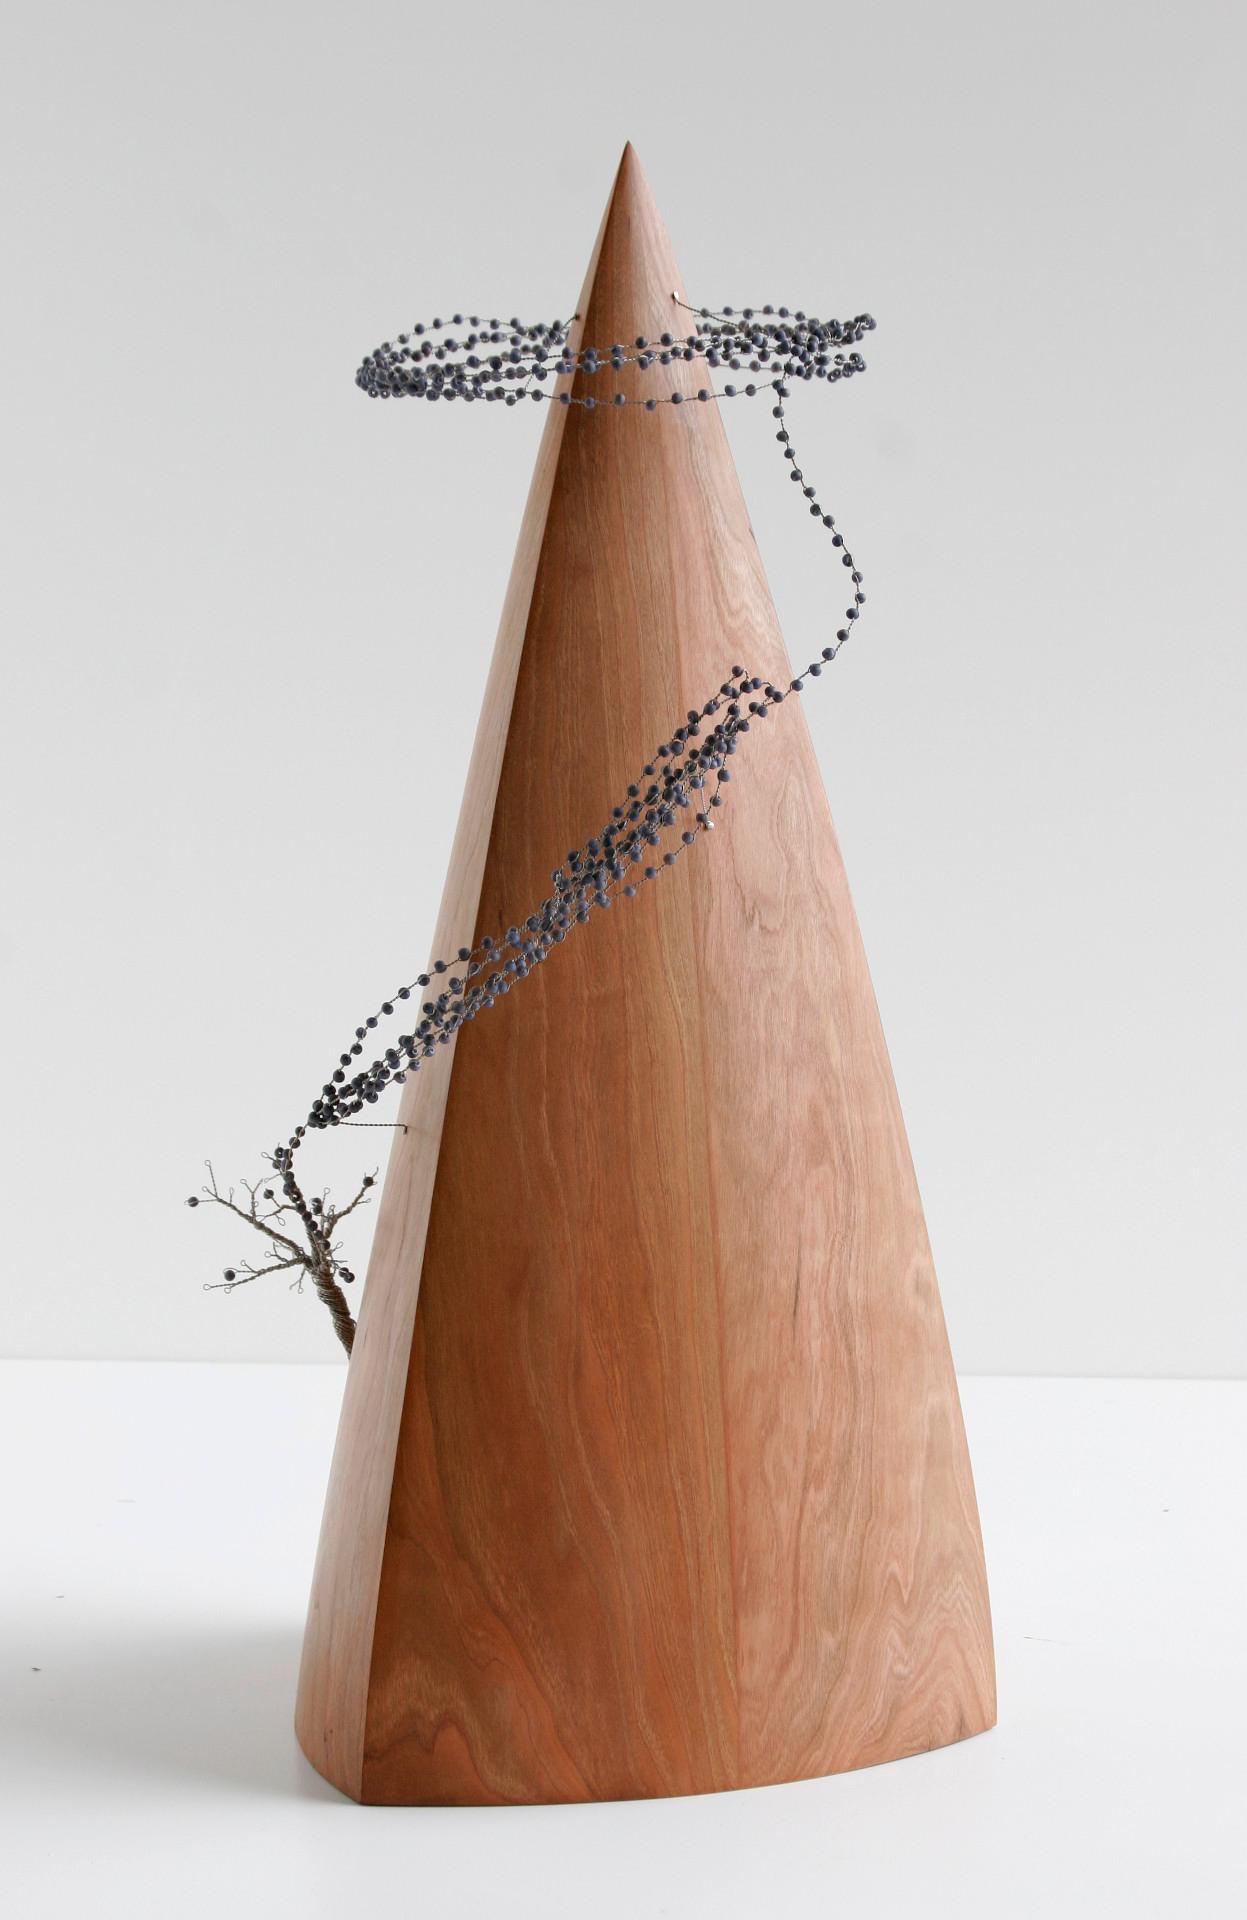 De une murmure à une tempête, sculpture contemporaine originale en bois et fil de fer
24